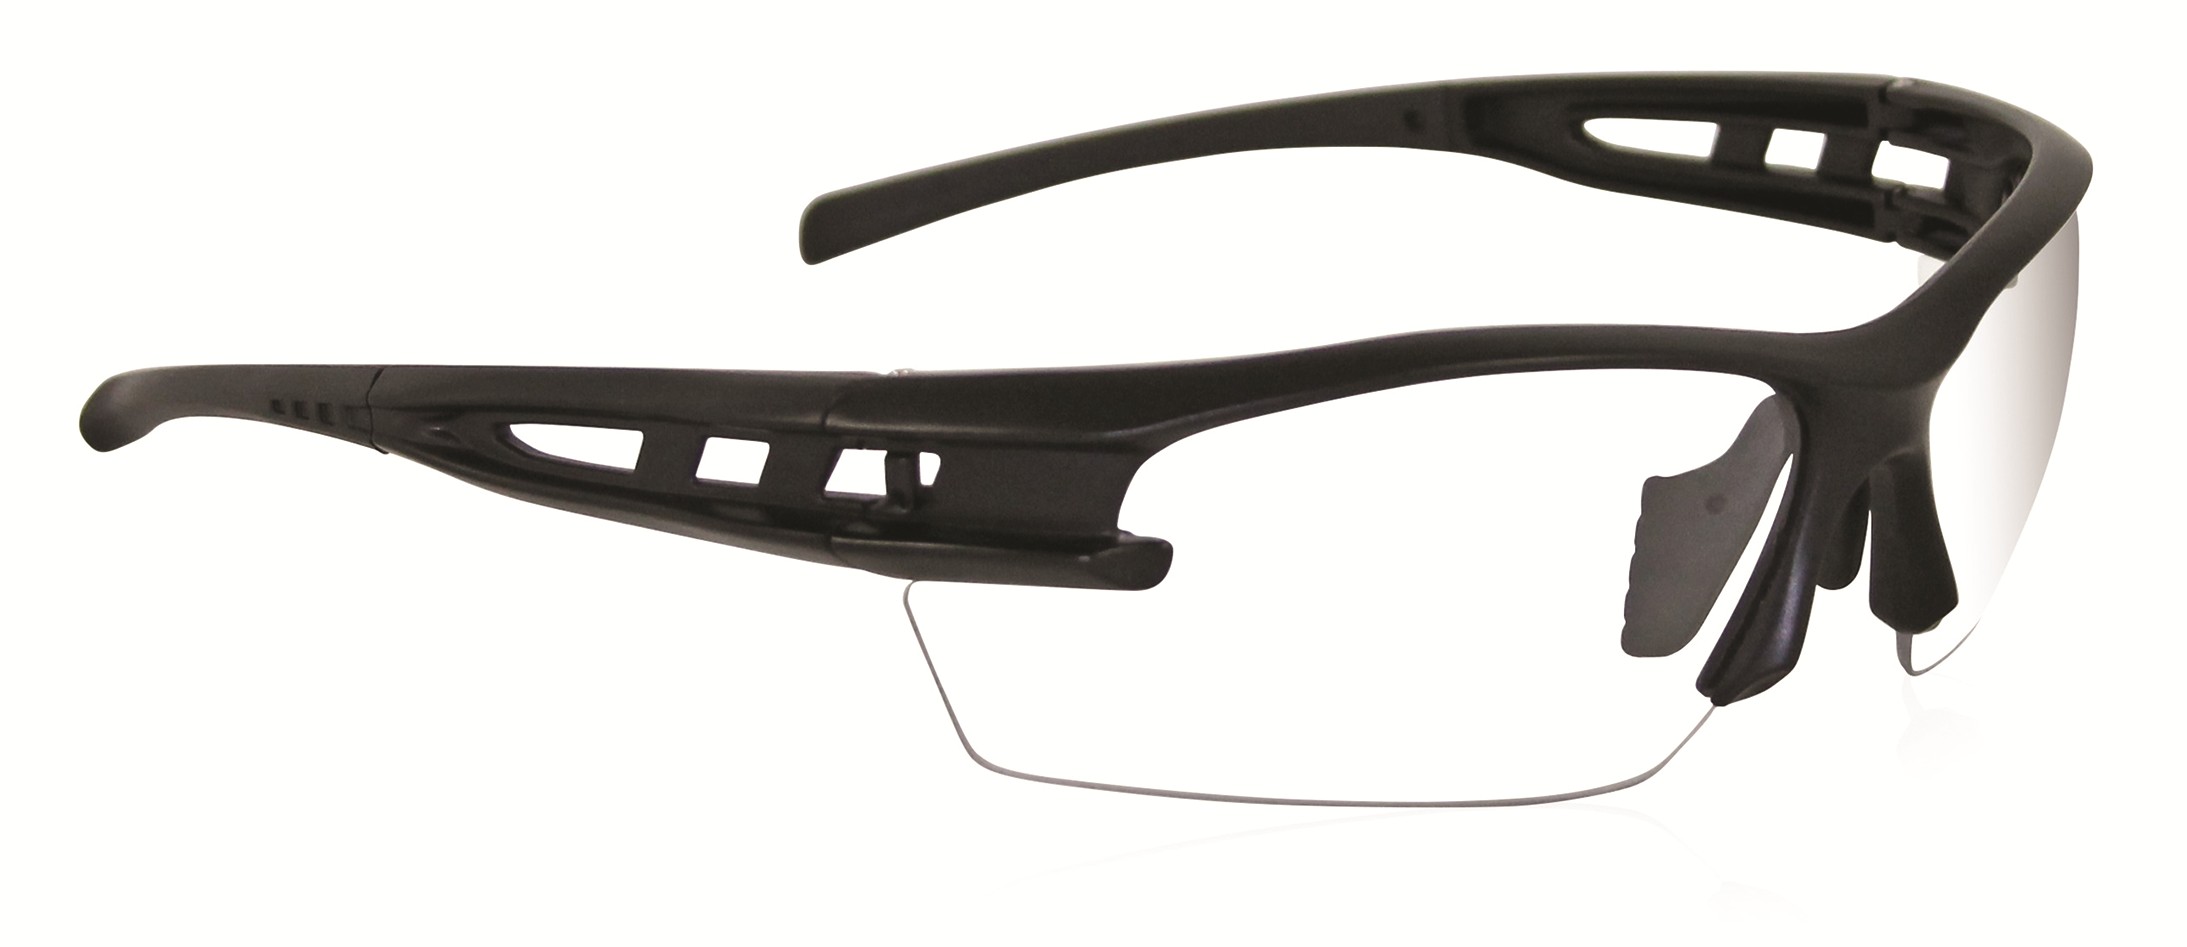 Spectro Safety Glasses - Slatebelt Safety | PPE | Safety Supplies